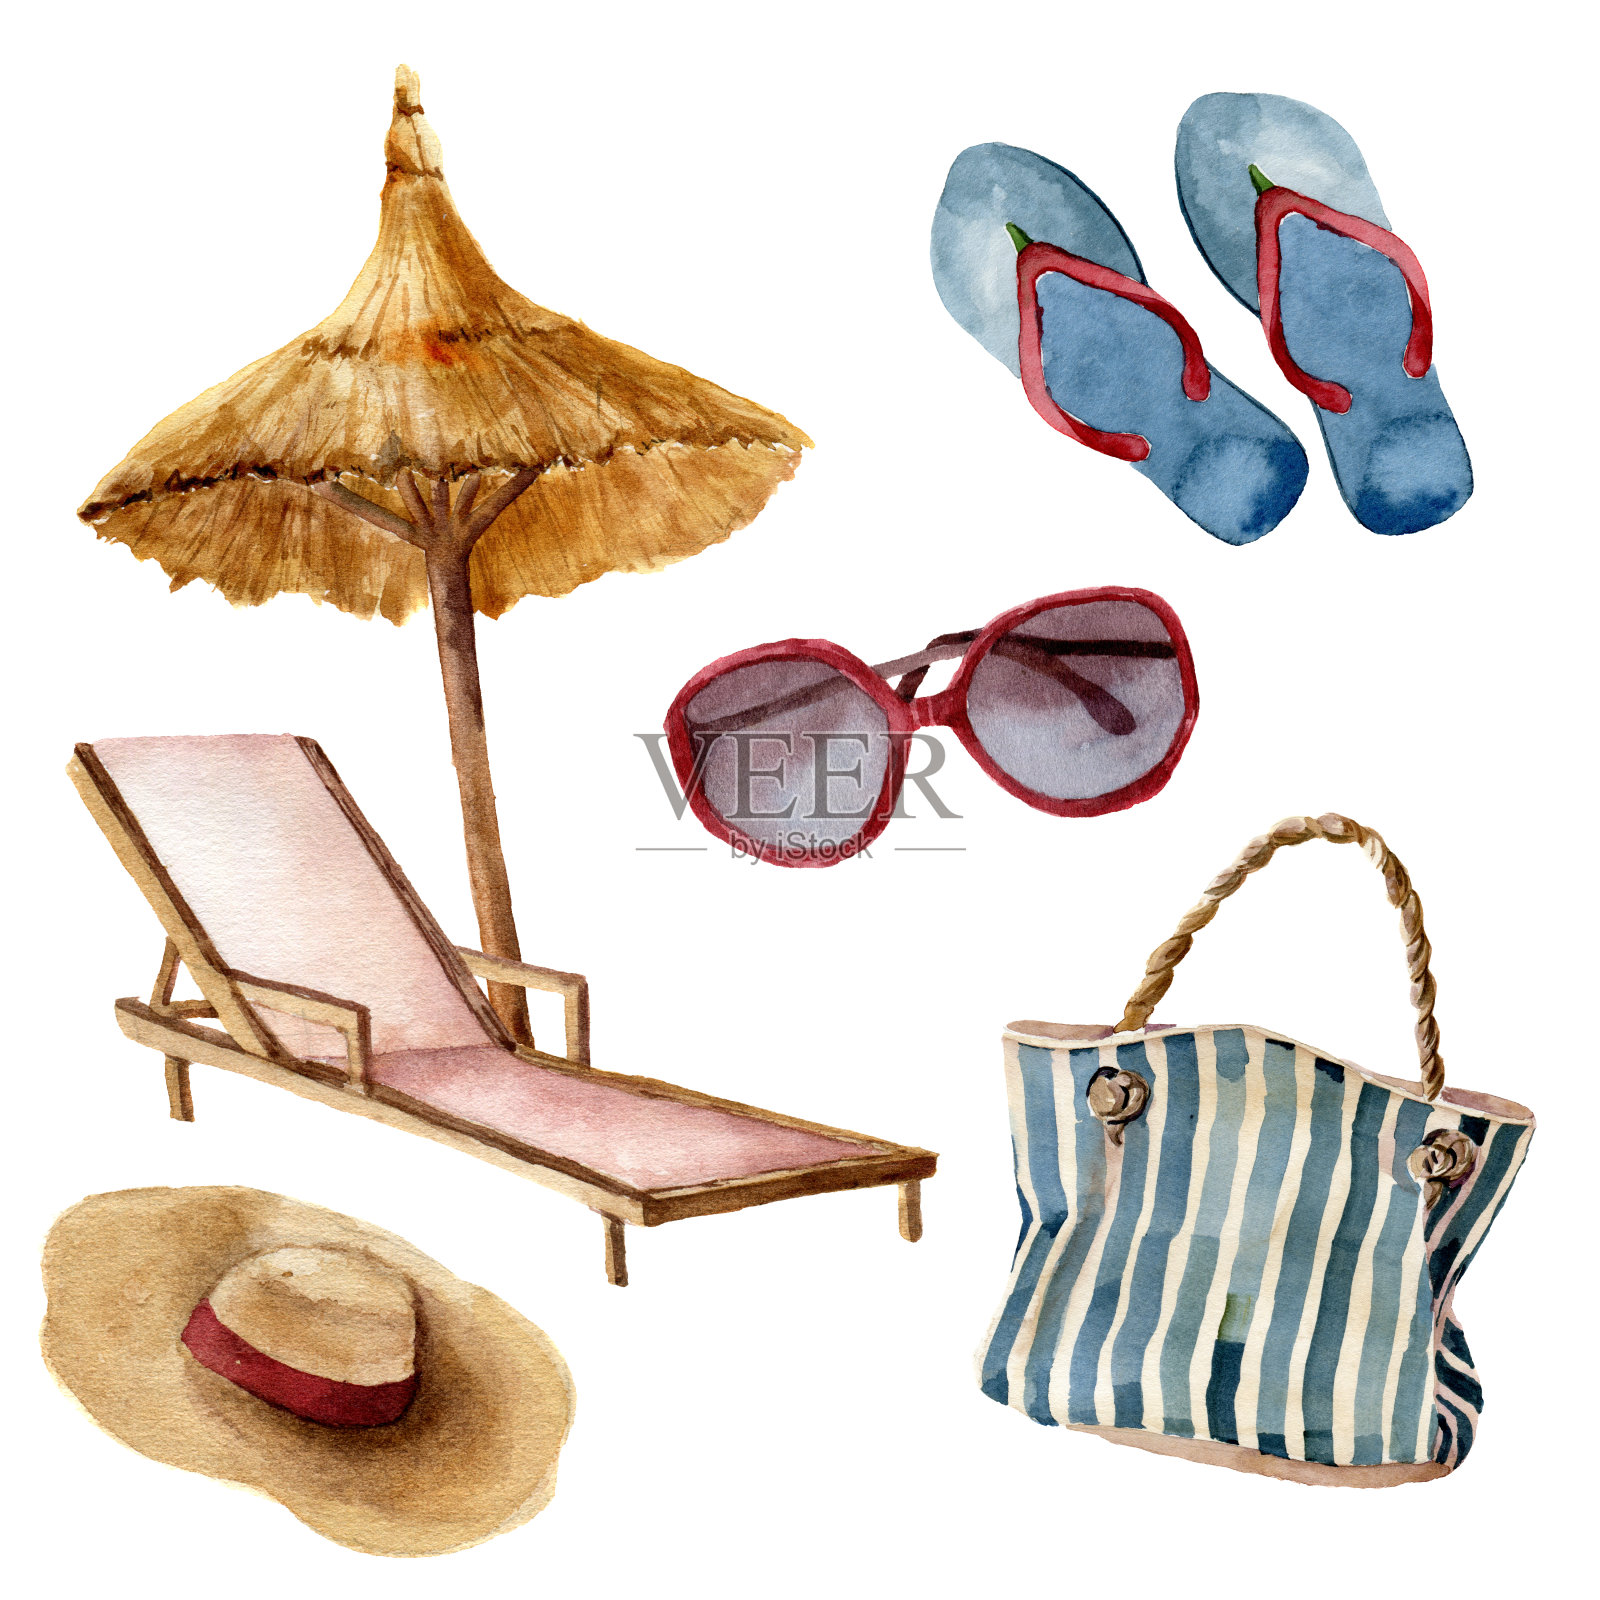 水彩画夏季海滩设置。手绘夏日度假物品:太阳镜、沙滩伞、沙滩椅、草帽、沙滩包、人字拖。热带插图孤立在白色背景。插画图片素材